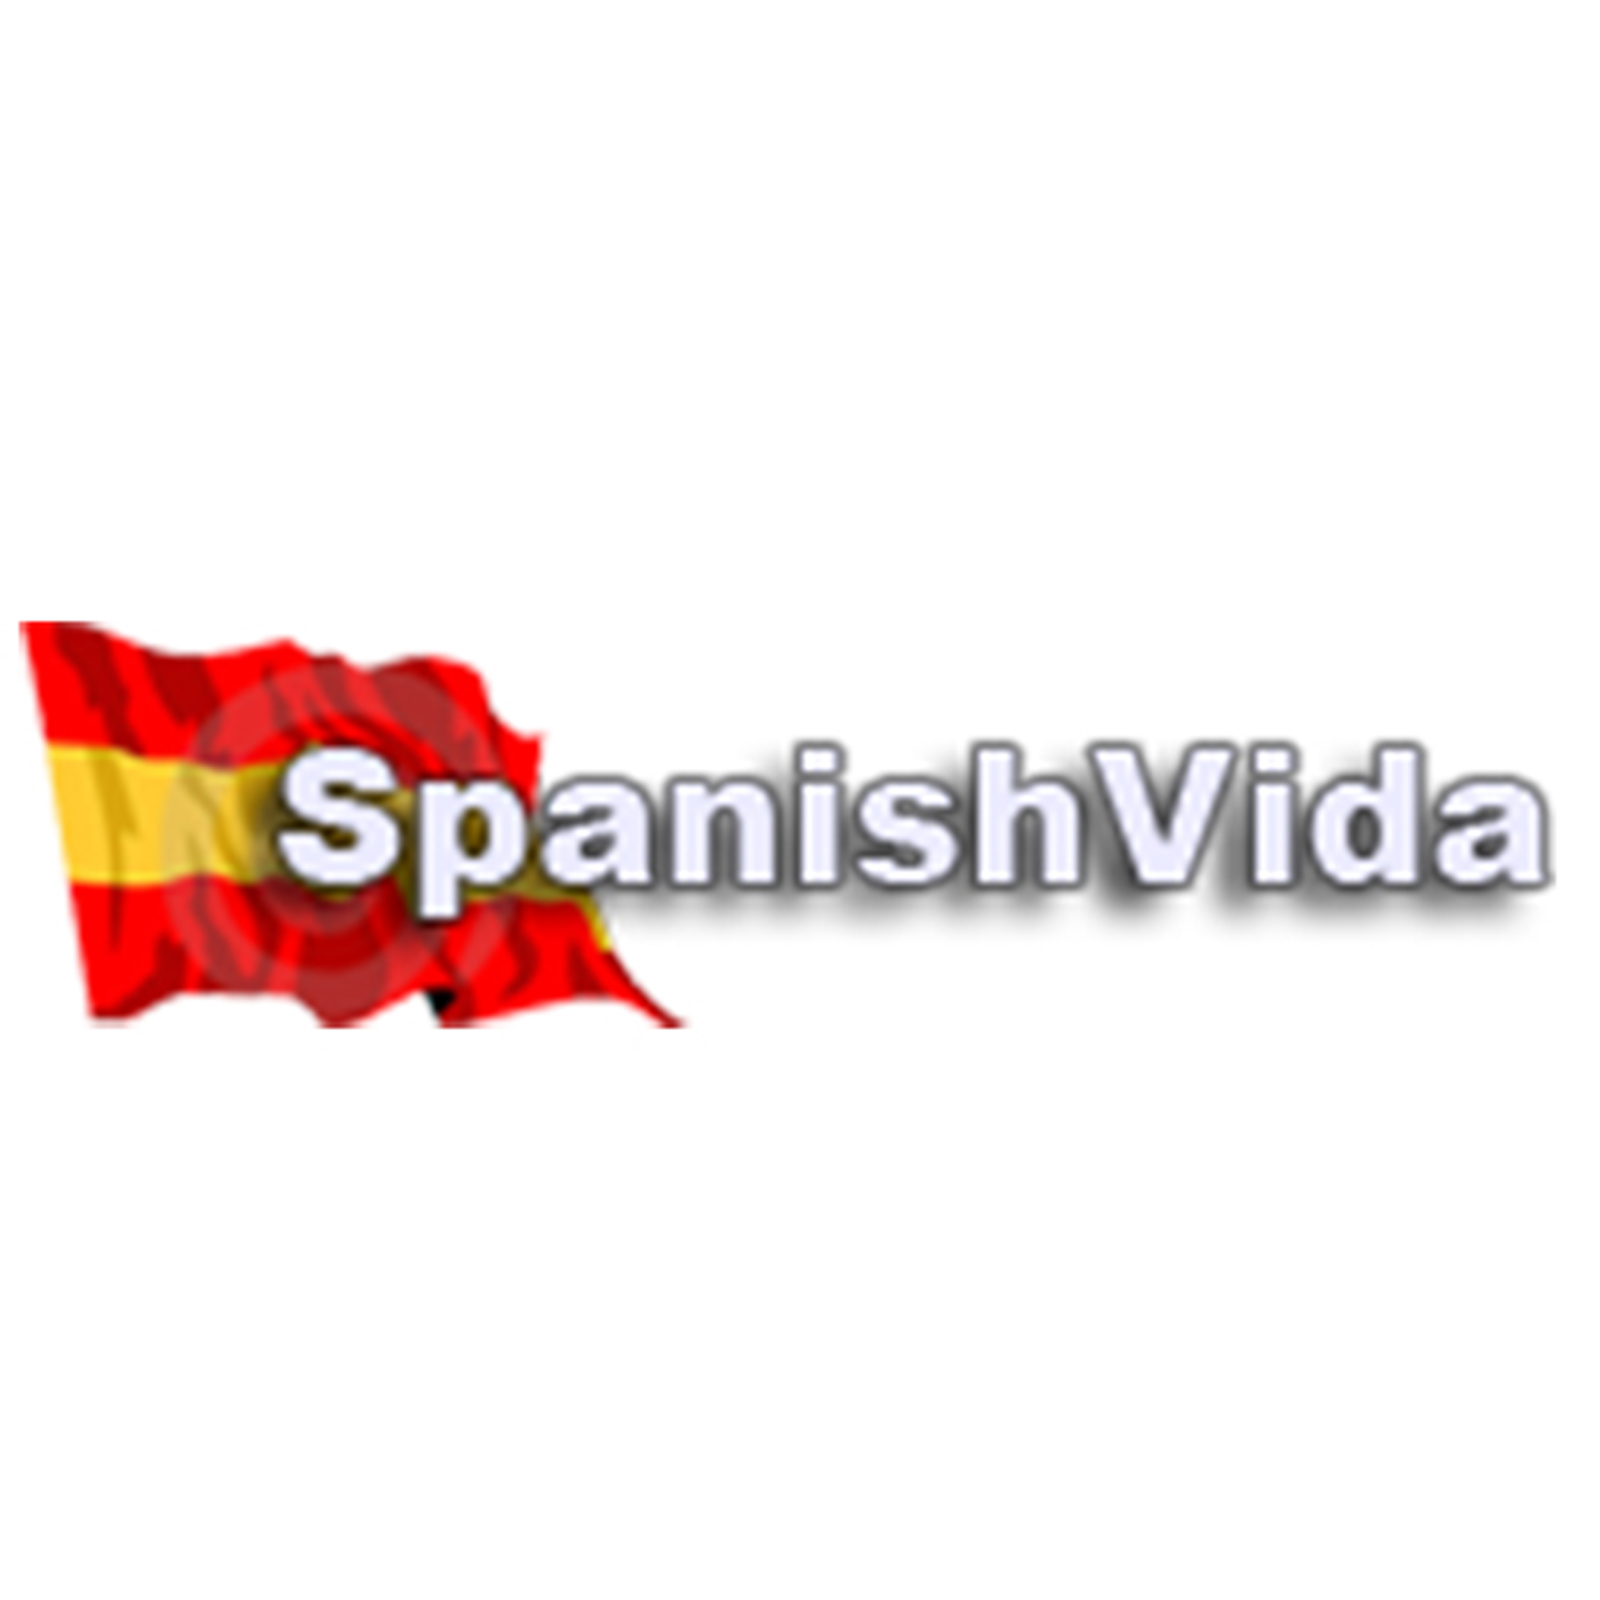 SpanishVida - Spanish news in English